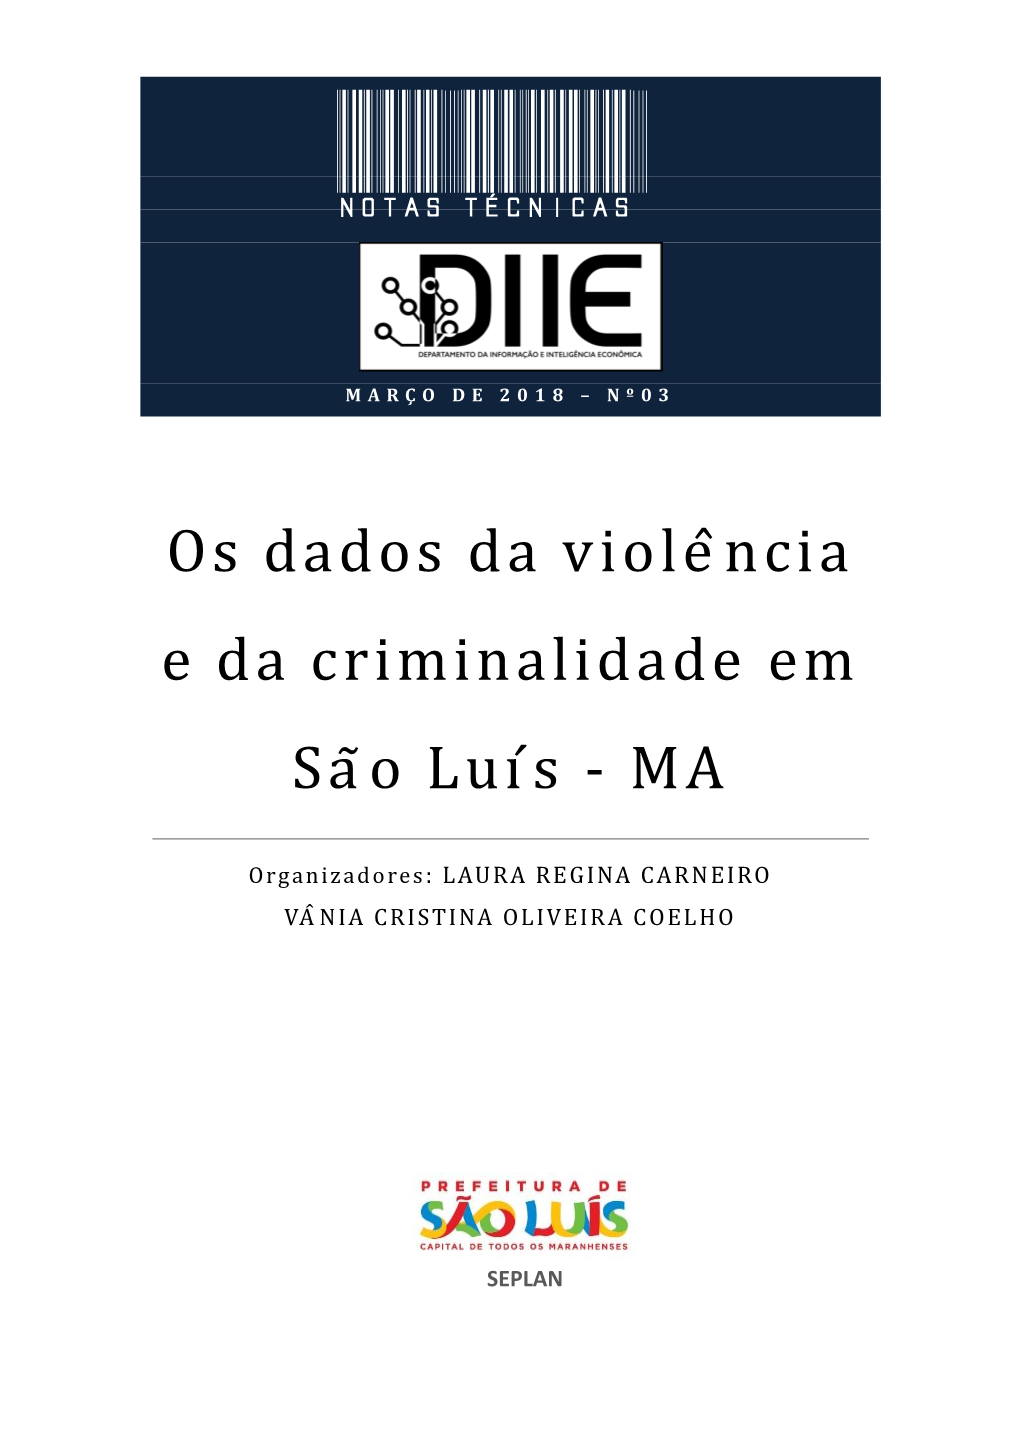 Os Dados Da Violência E Da Criminalidade Em São Luís - MA